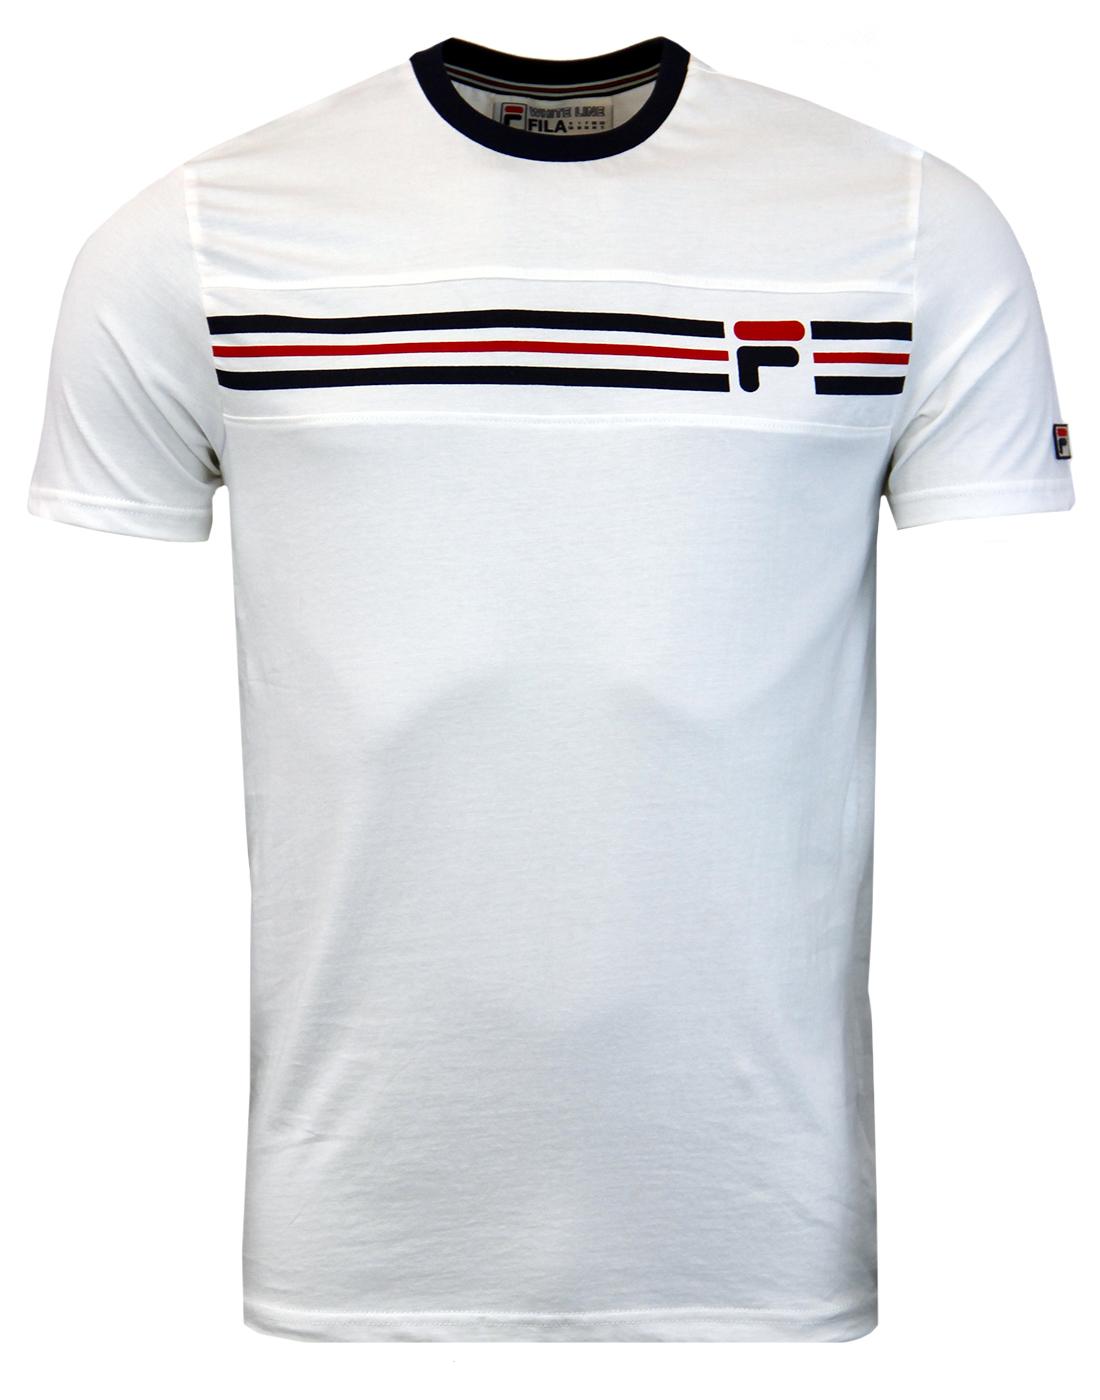 Vandorno FILA VINTAGE Retro 70s T-Shirt - Gardenia